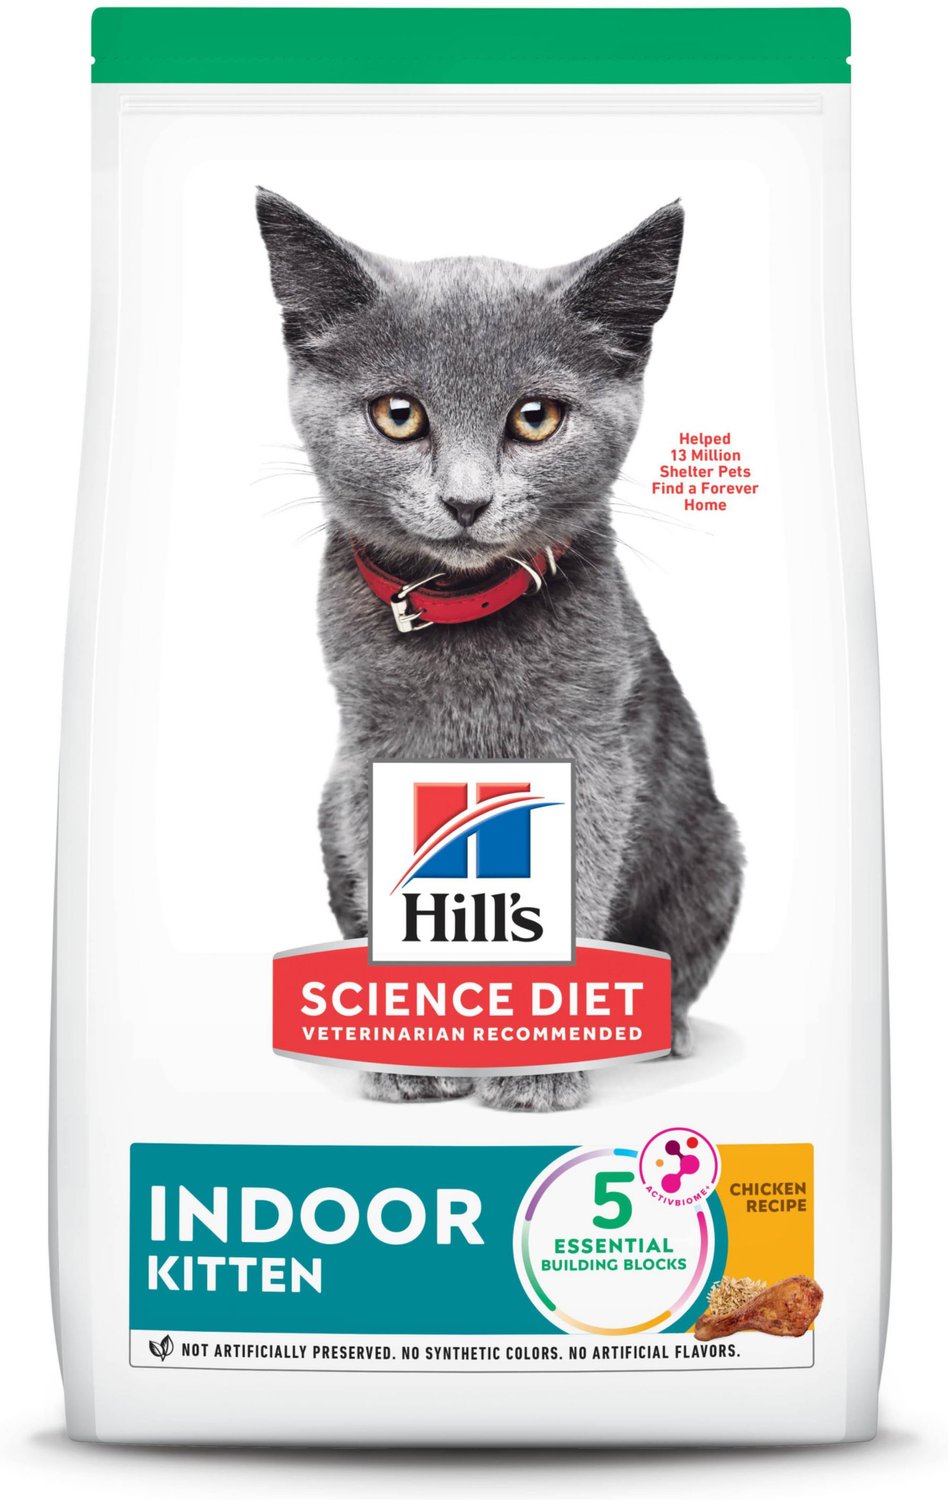 Hill's Science Diet Indoor Kitten Dry Cat Food, 7lb bag